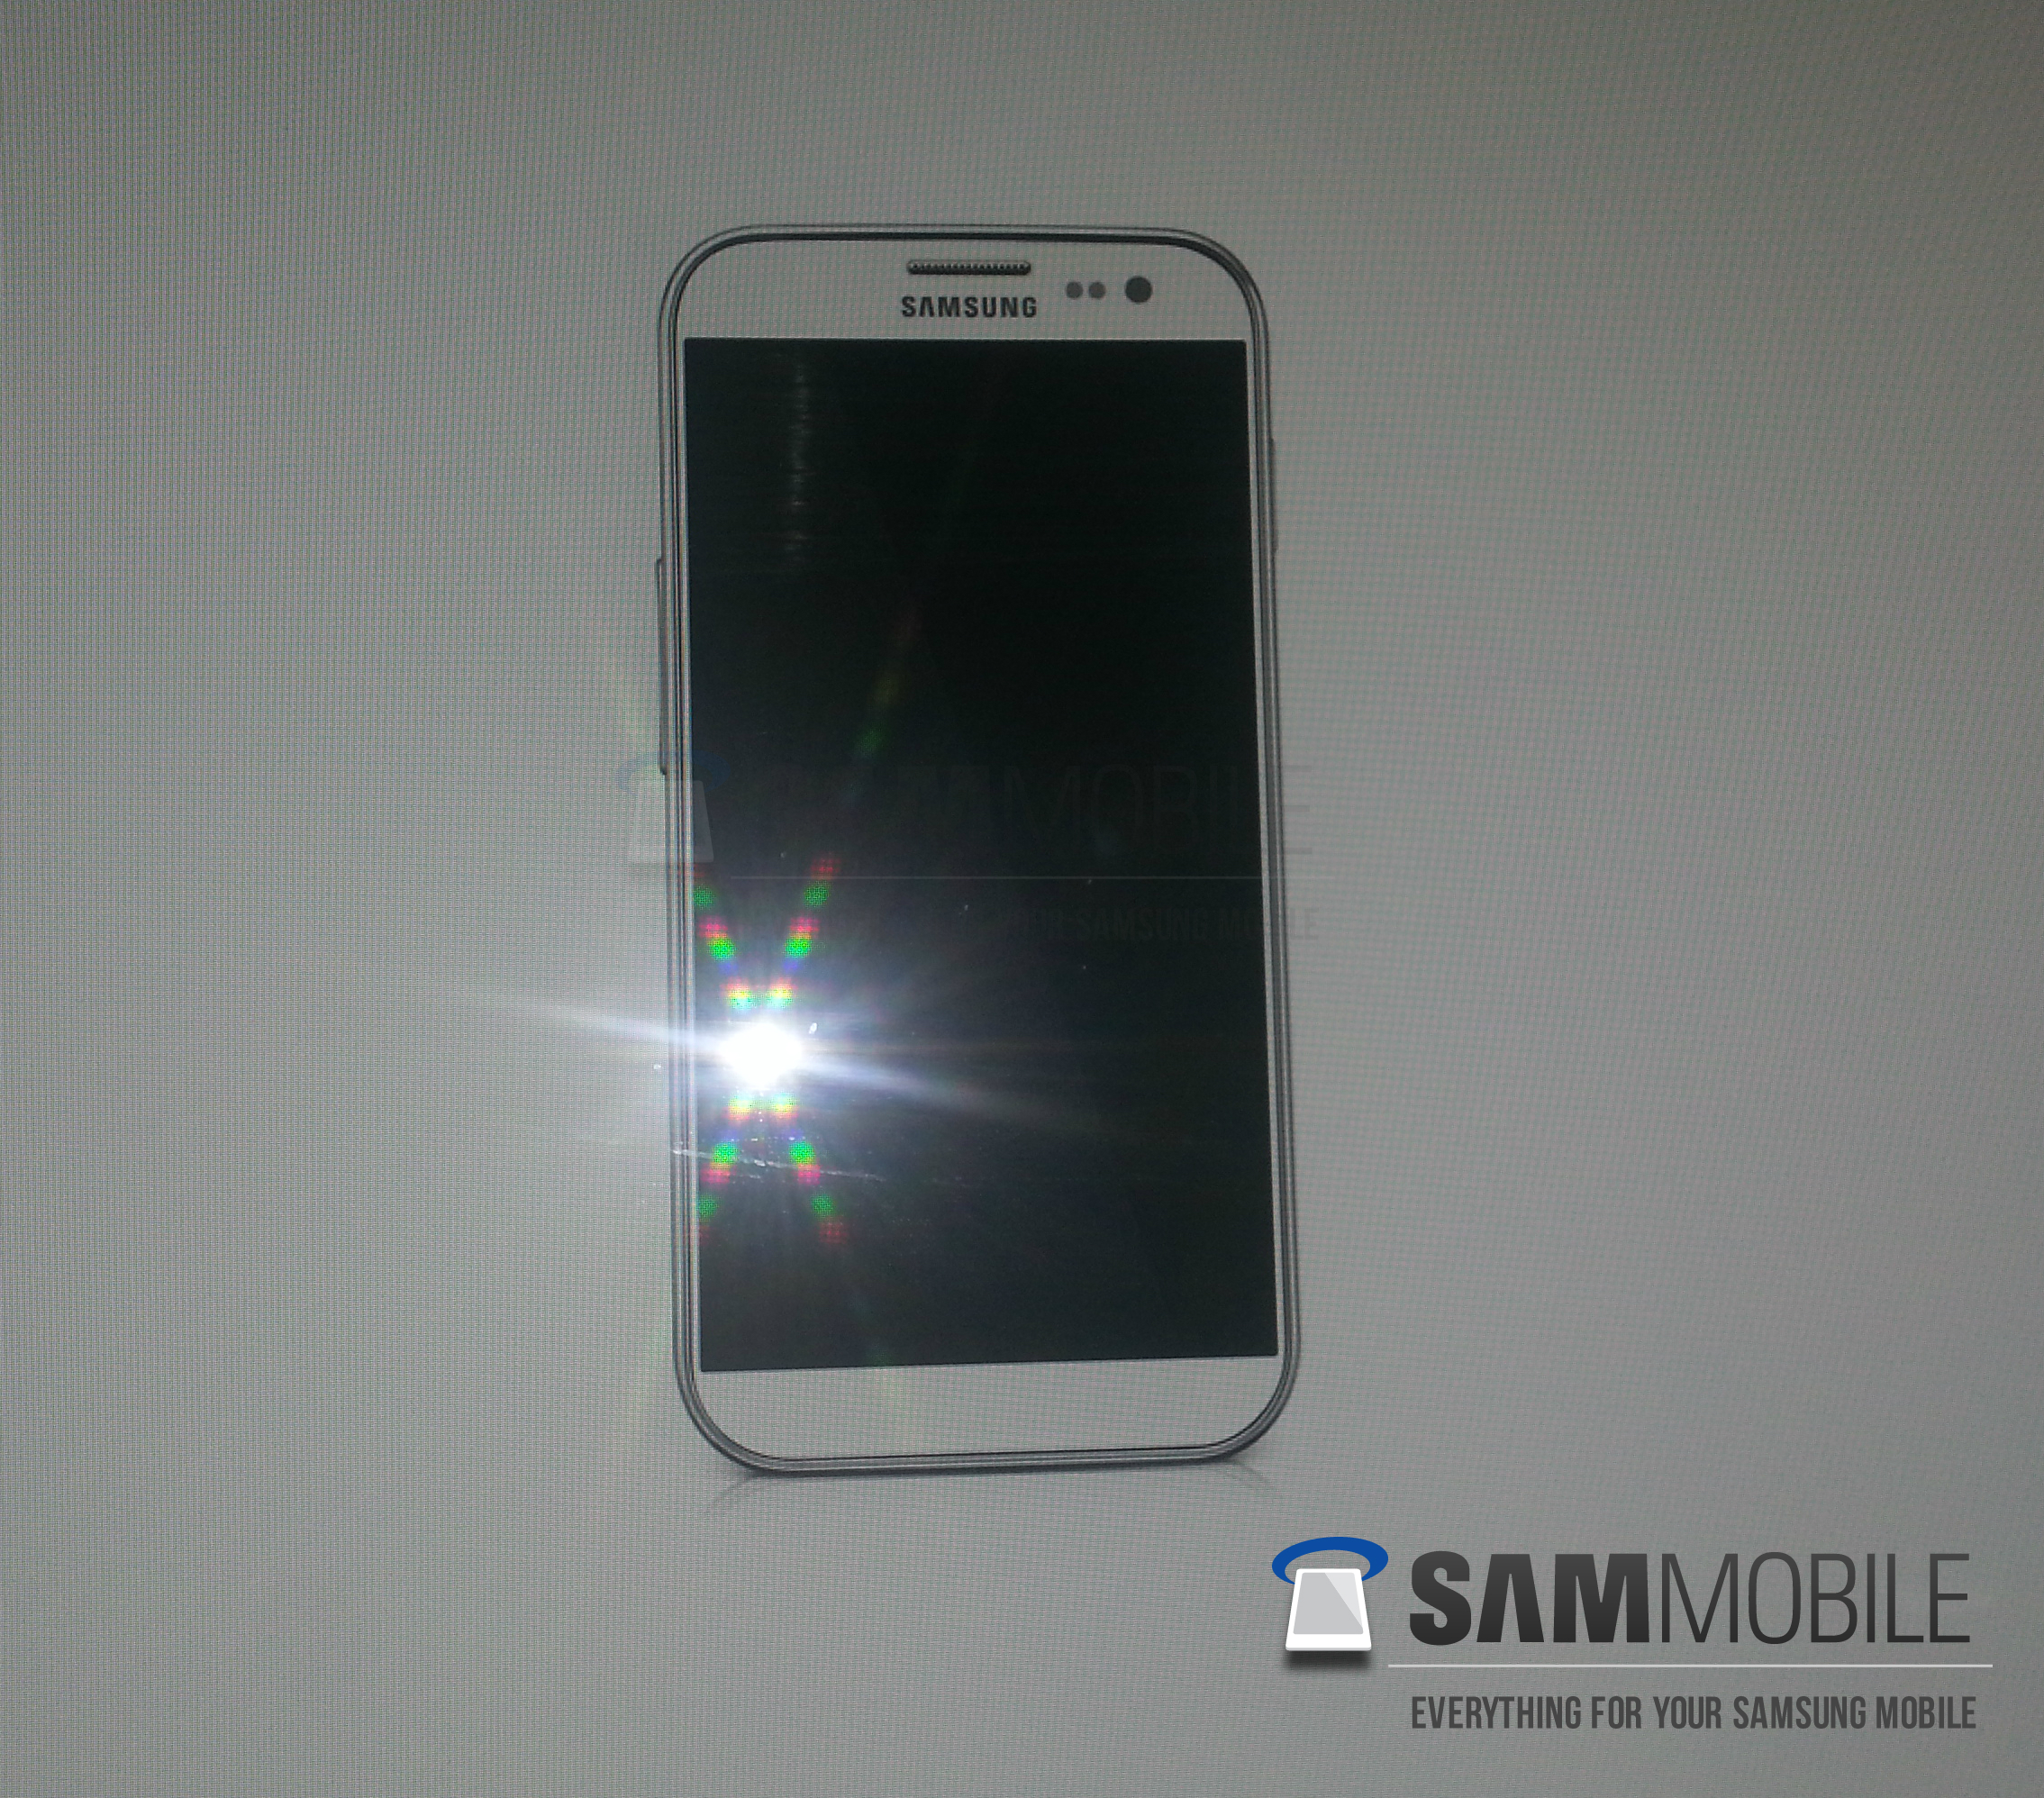 Le Samsung Galaxy S4 sera présenté le 14 mars